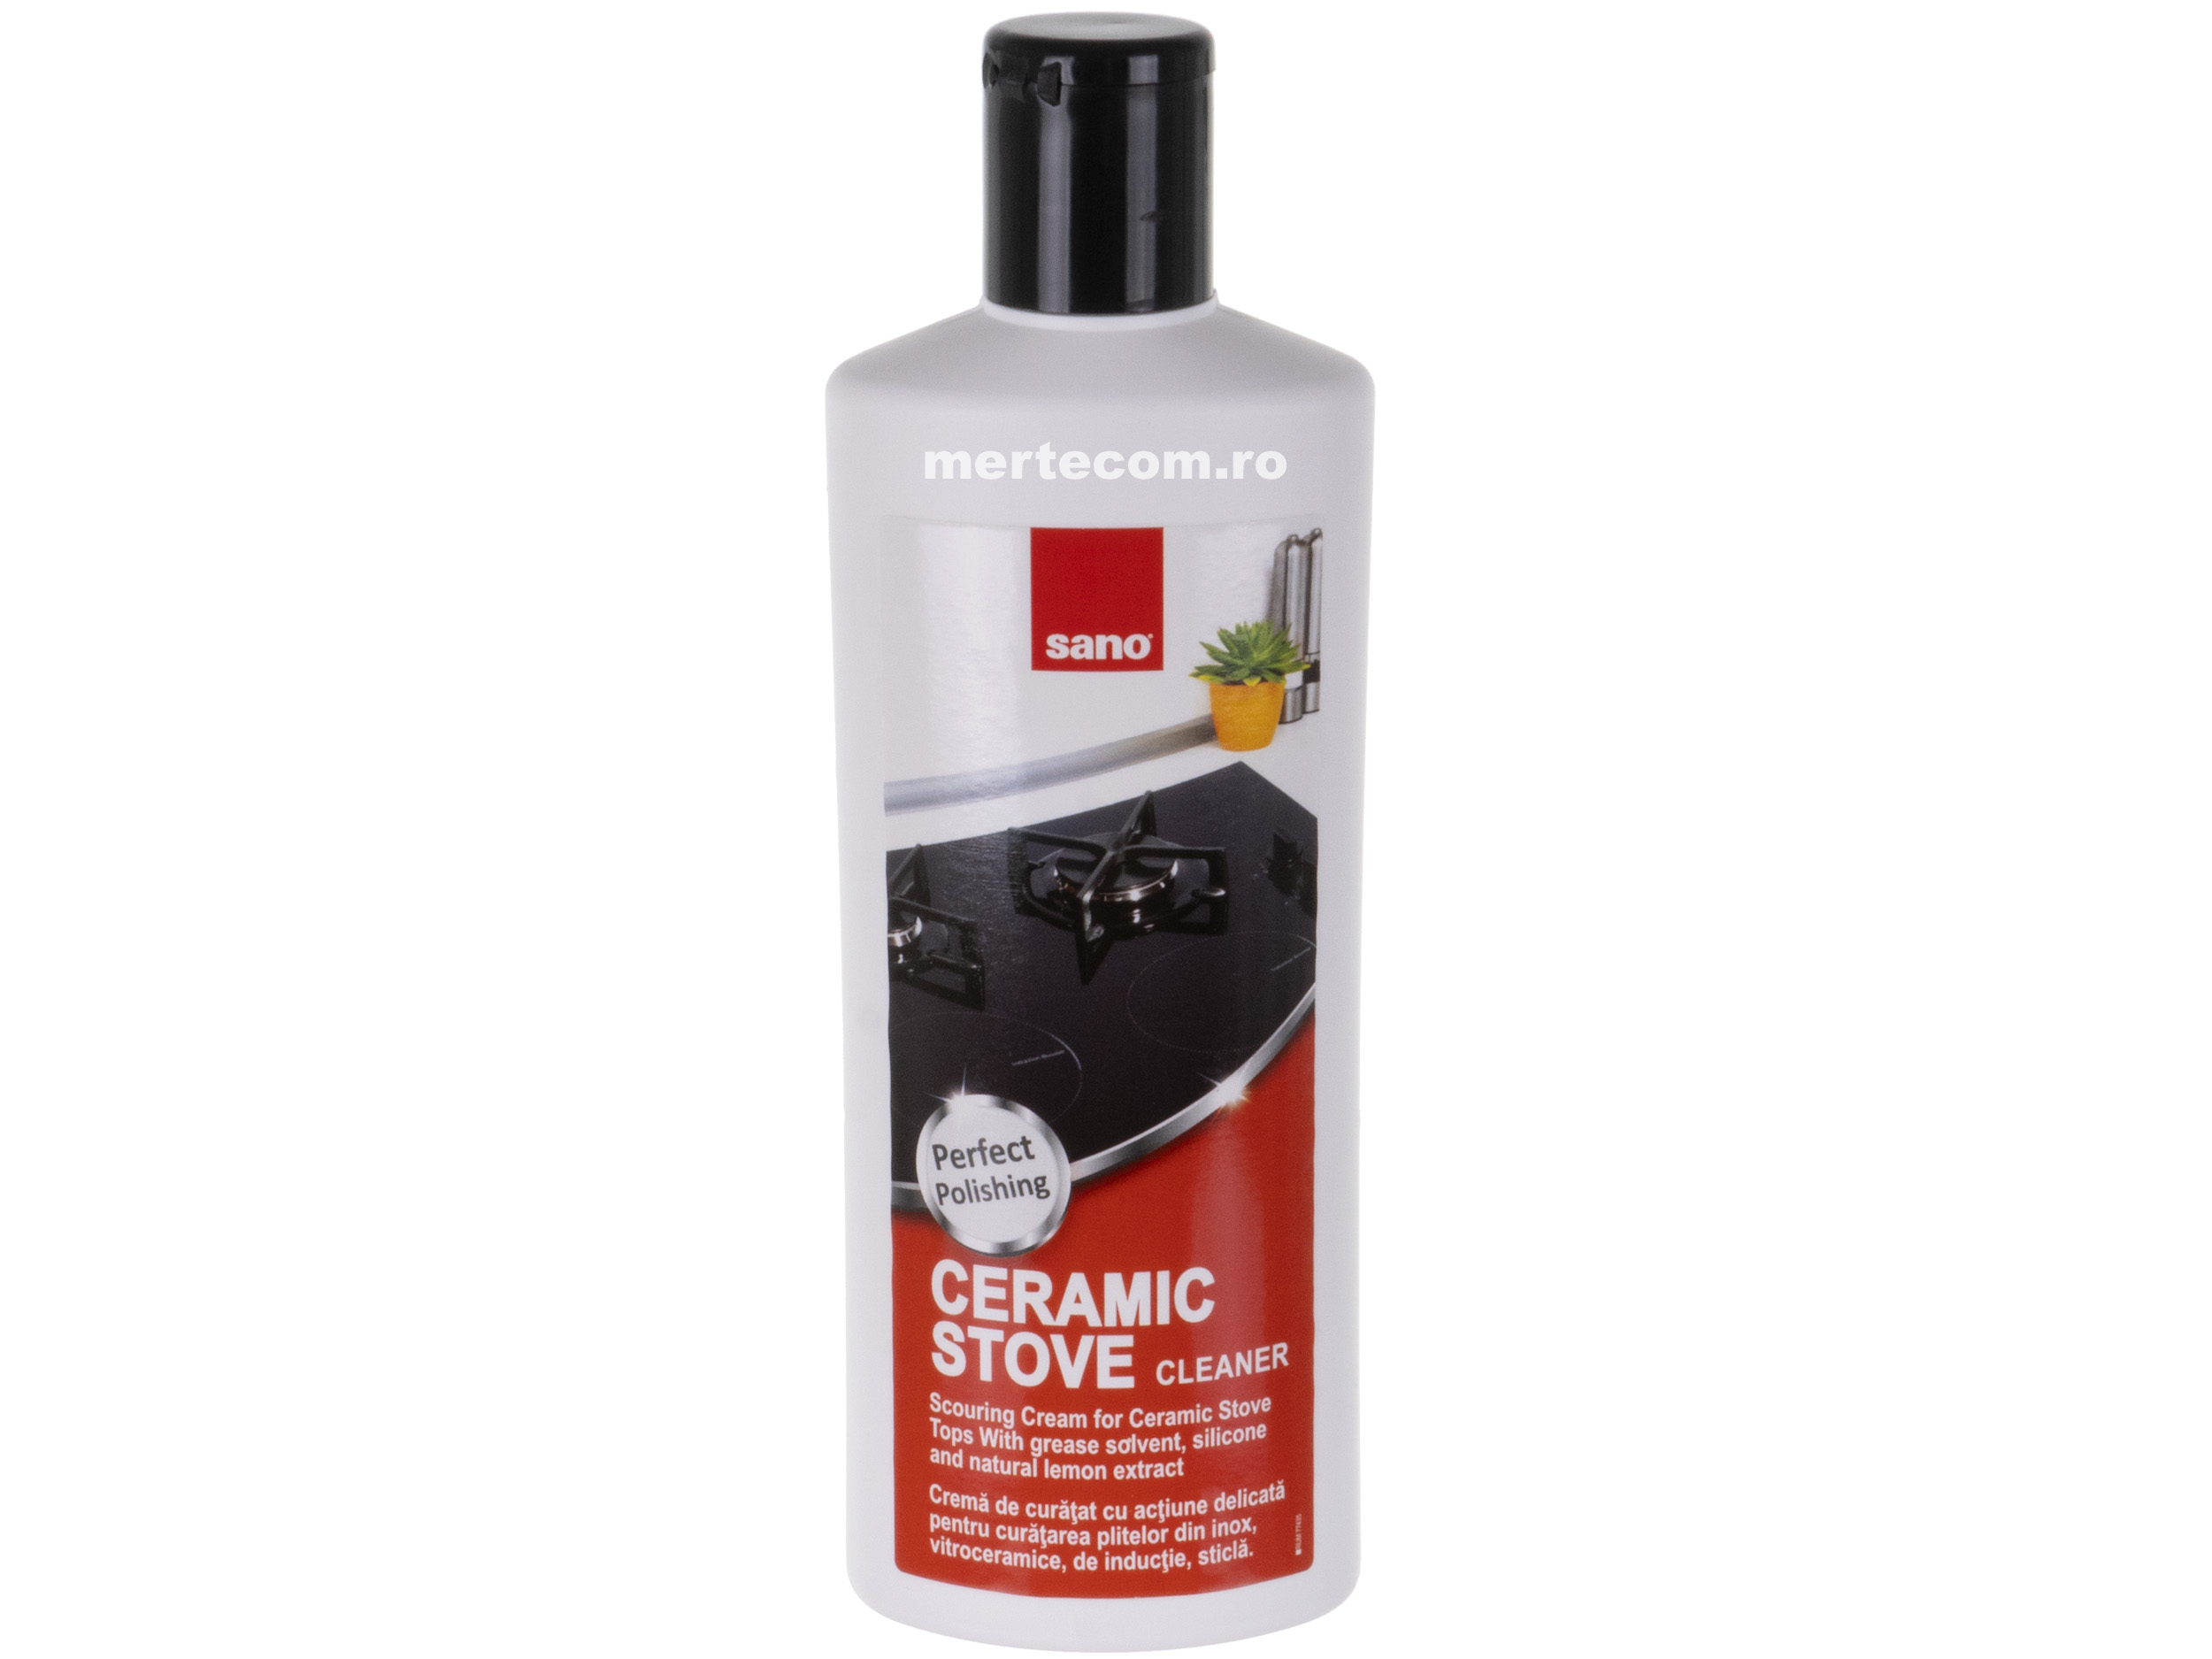 Conditional shave Expertise Detergent crema plite ceramice Sano 300 g - Mertecom.ro